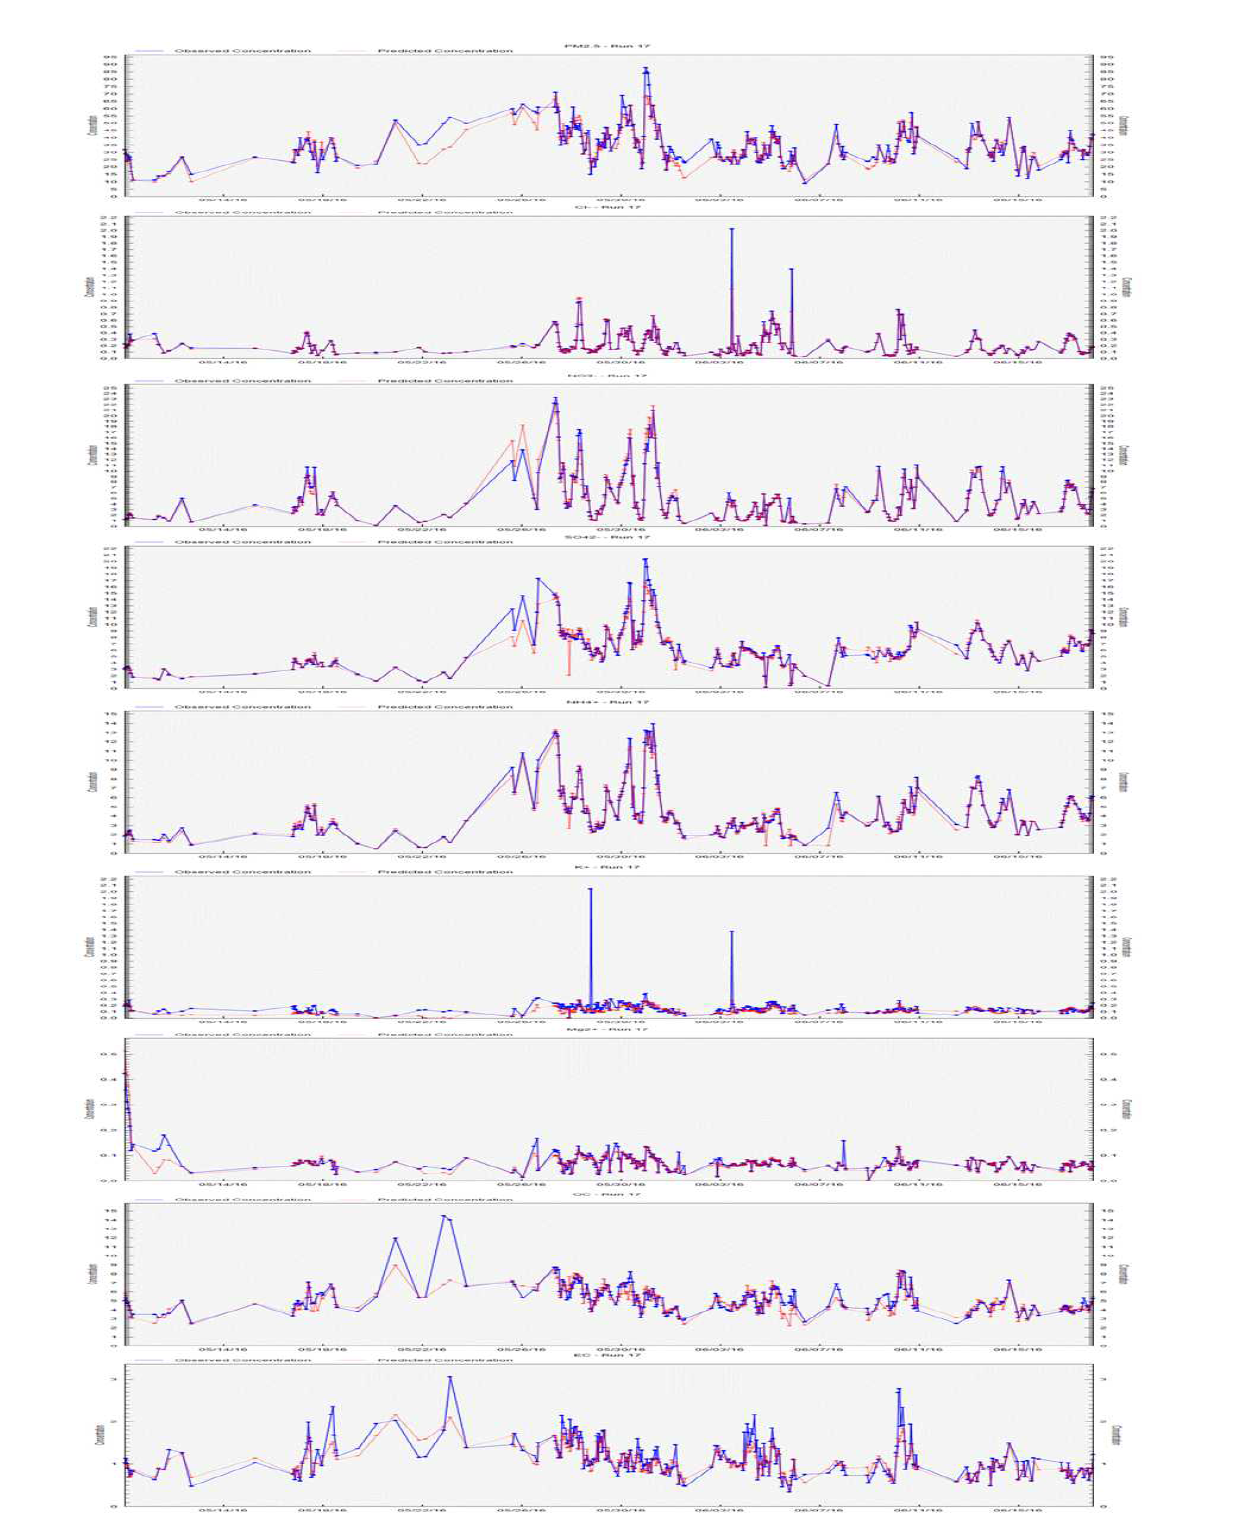 수도권 PM2.5, 이온성분, 탄소성분 시계열 그래프